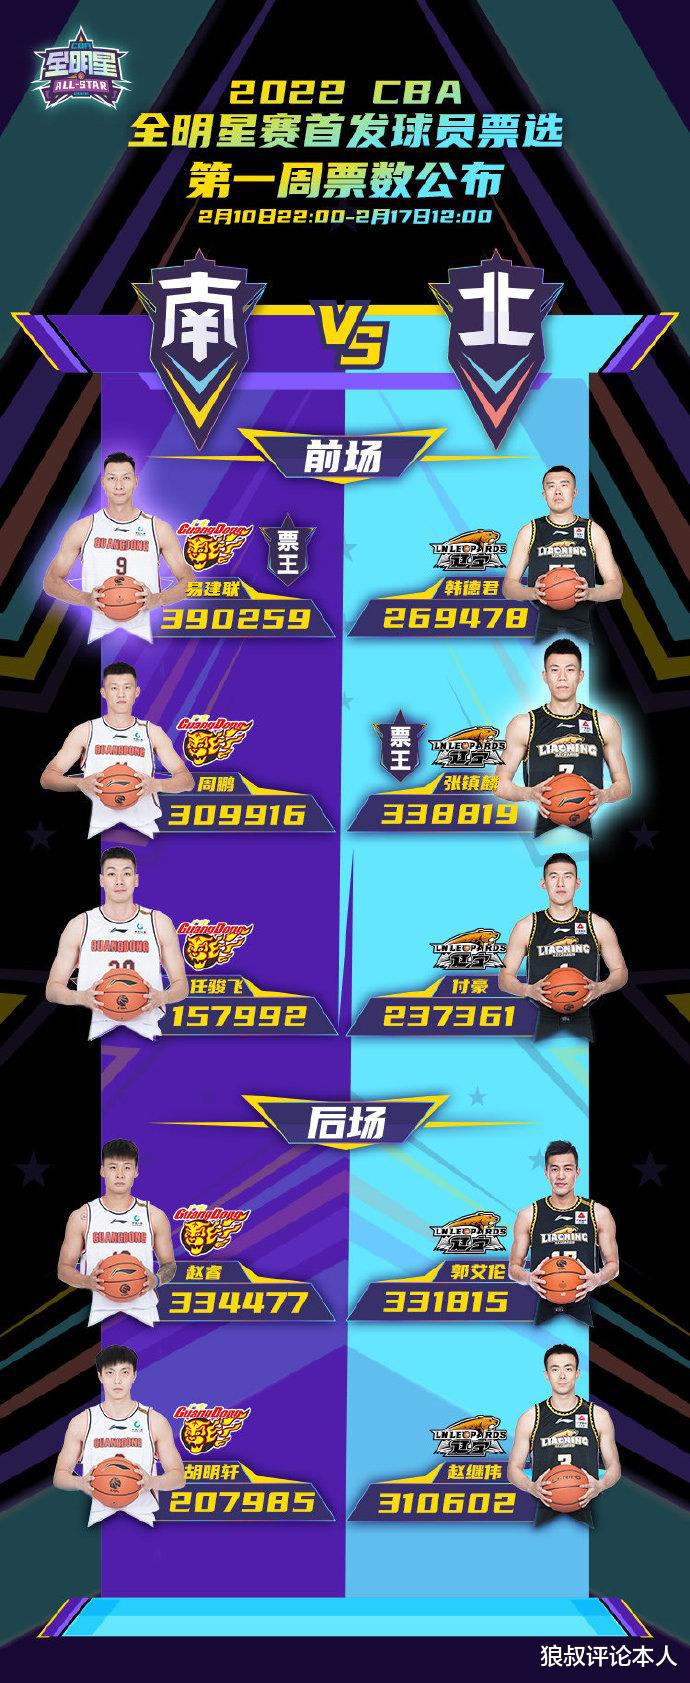 chính thức! CBA đã công bố số lượng phiếu bầu tất cả trong tuần đầu tiên, Yi Jianlian trở thành vua bỏ phiếu, người chiến thắng và người chiến thắng Yuecheng (2)